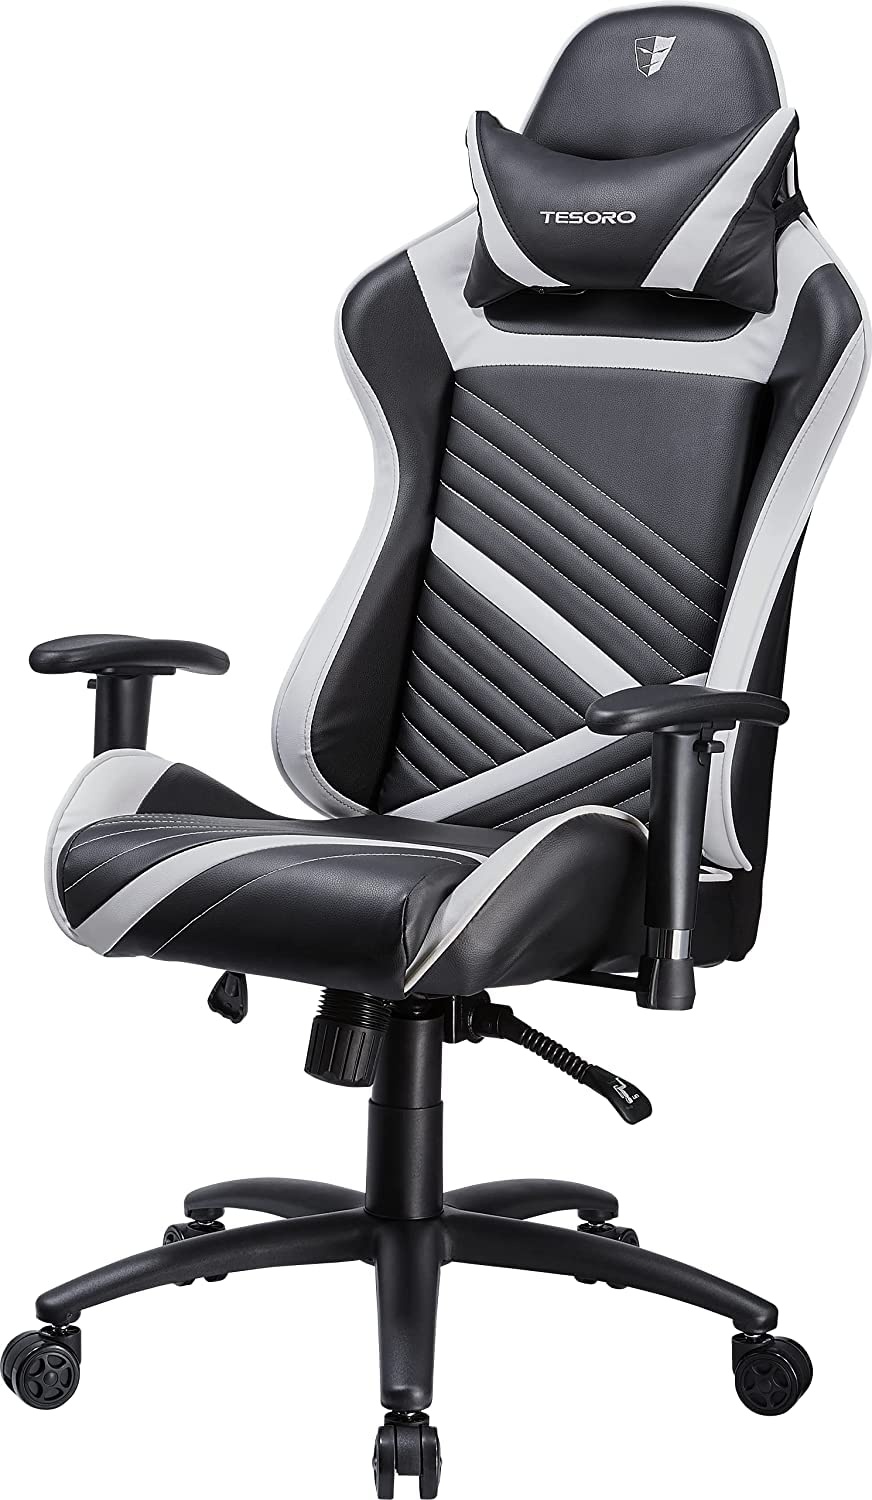 Tesoro Zone Speed Gaming Stuhl F700 Weiß/Schwarz - schmaler Gamer Stuhl mit Wippfunktion, PU-Leder, verstellbare Armlehnen, Nackenkissen